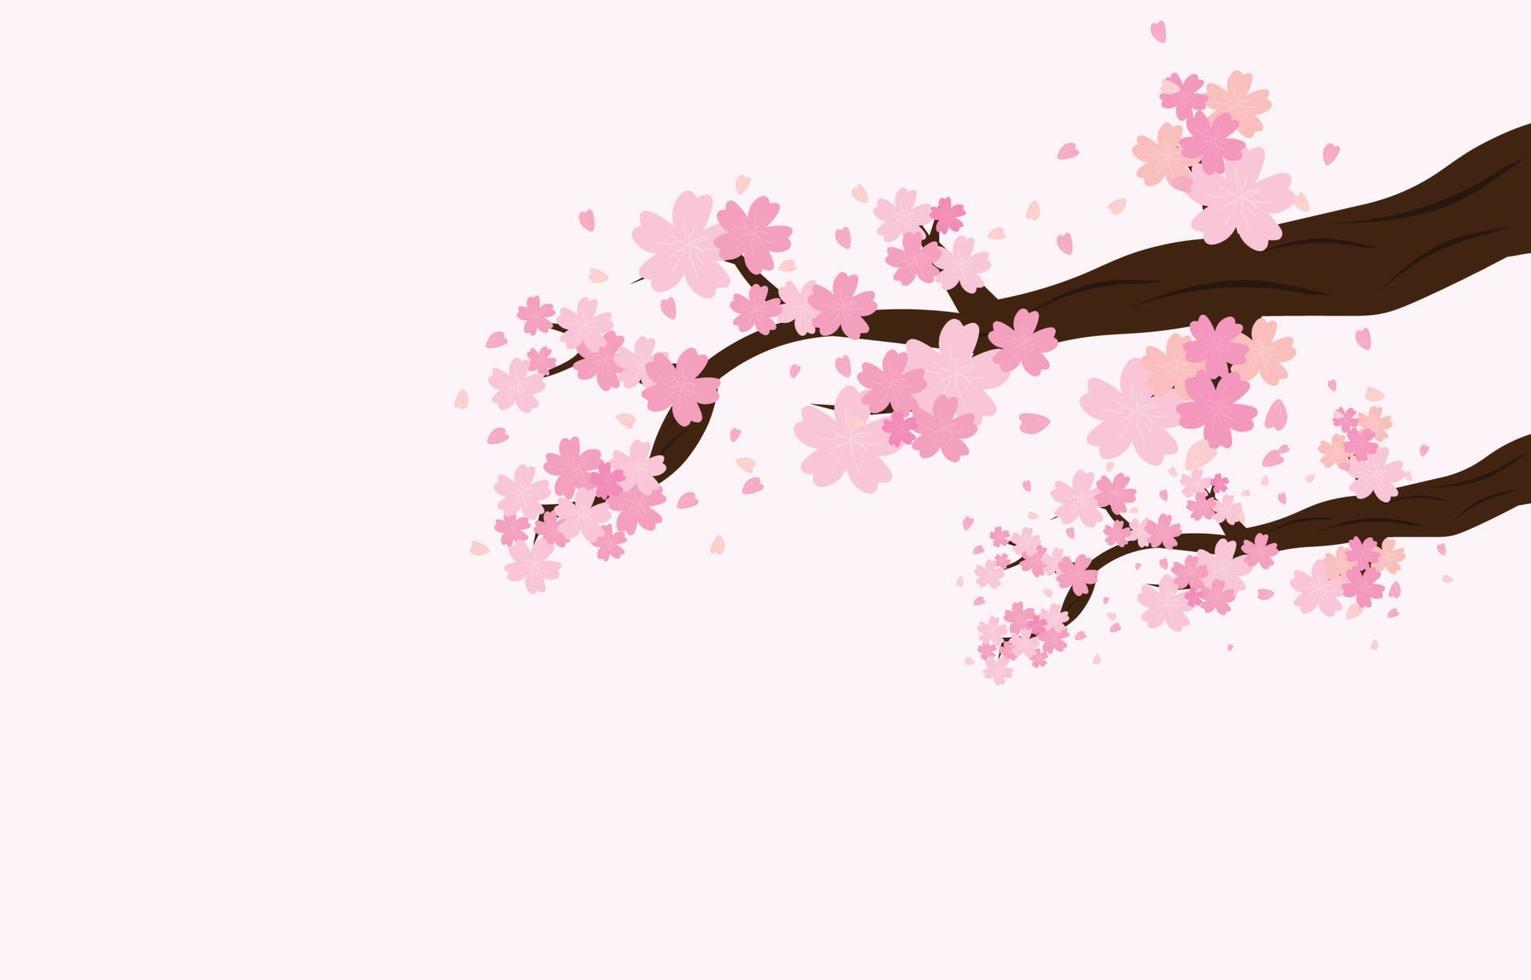 Äste der Baumrosa-Kirschblüte verziert mit hellem Hintergrund, lokalisiert mit Hintergrund, Frühlingsblumen-Illustrationsvektor vektor